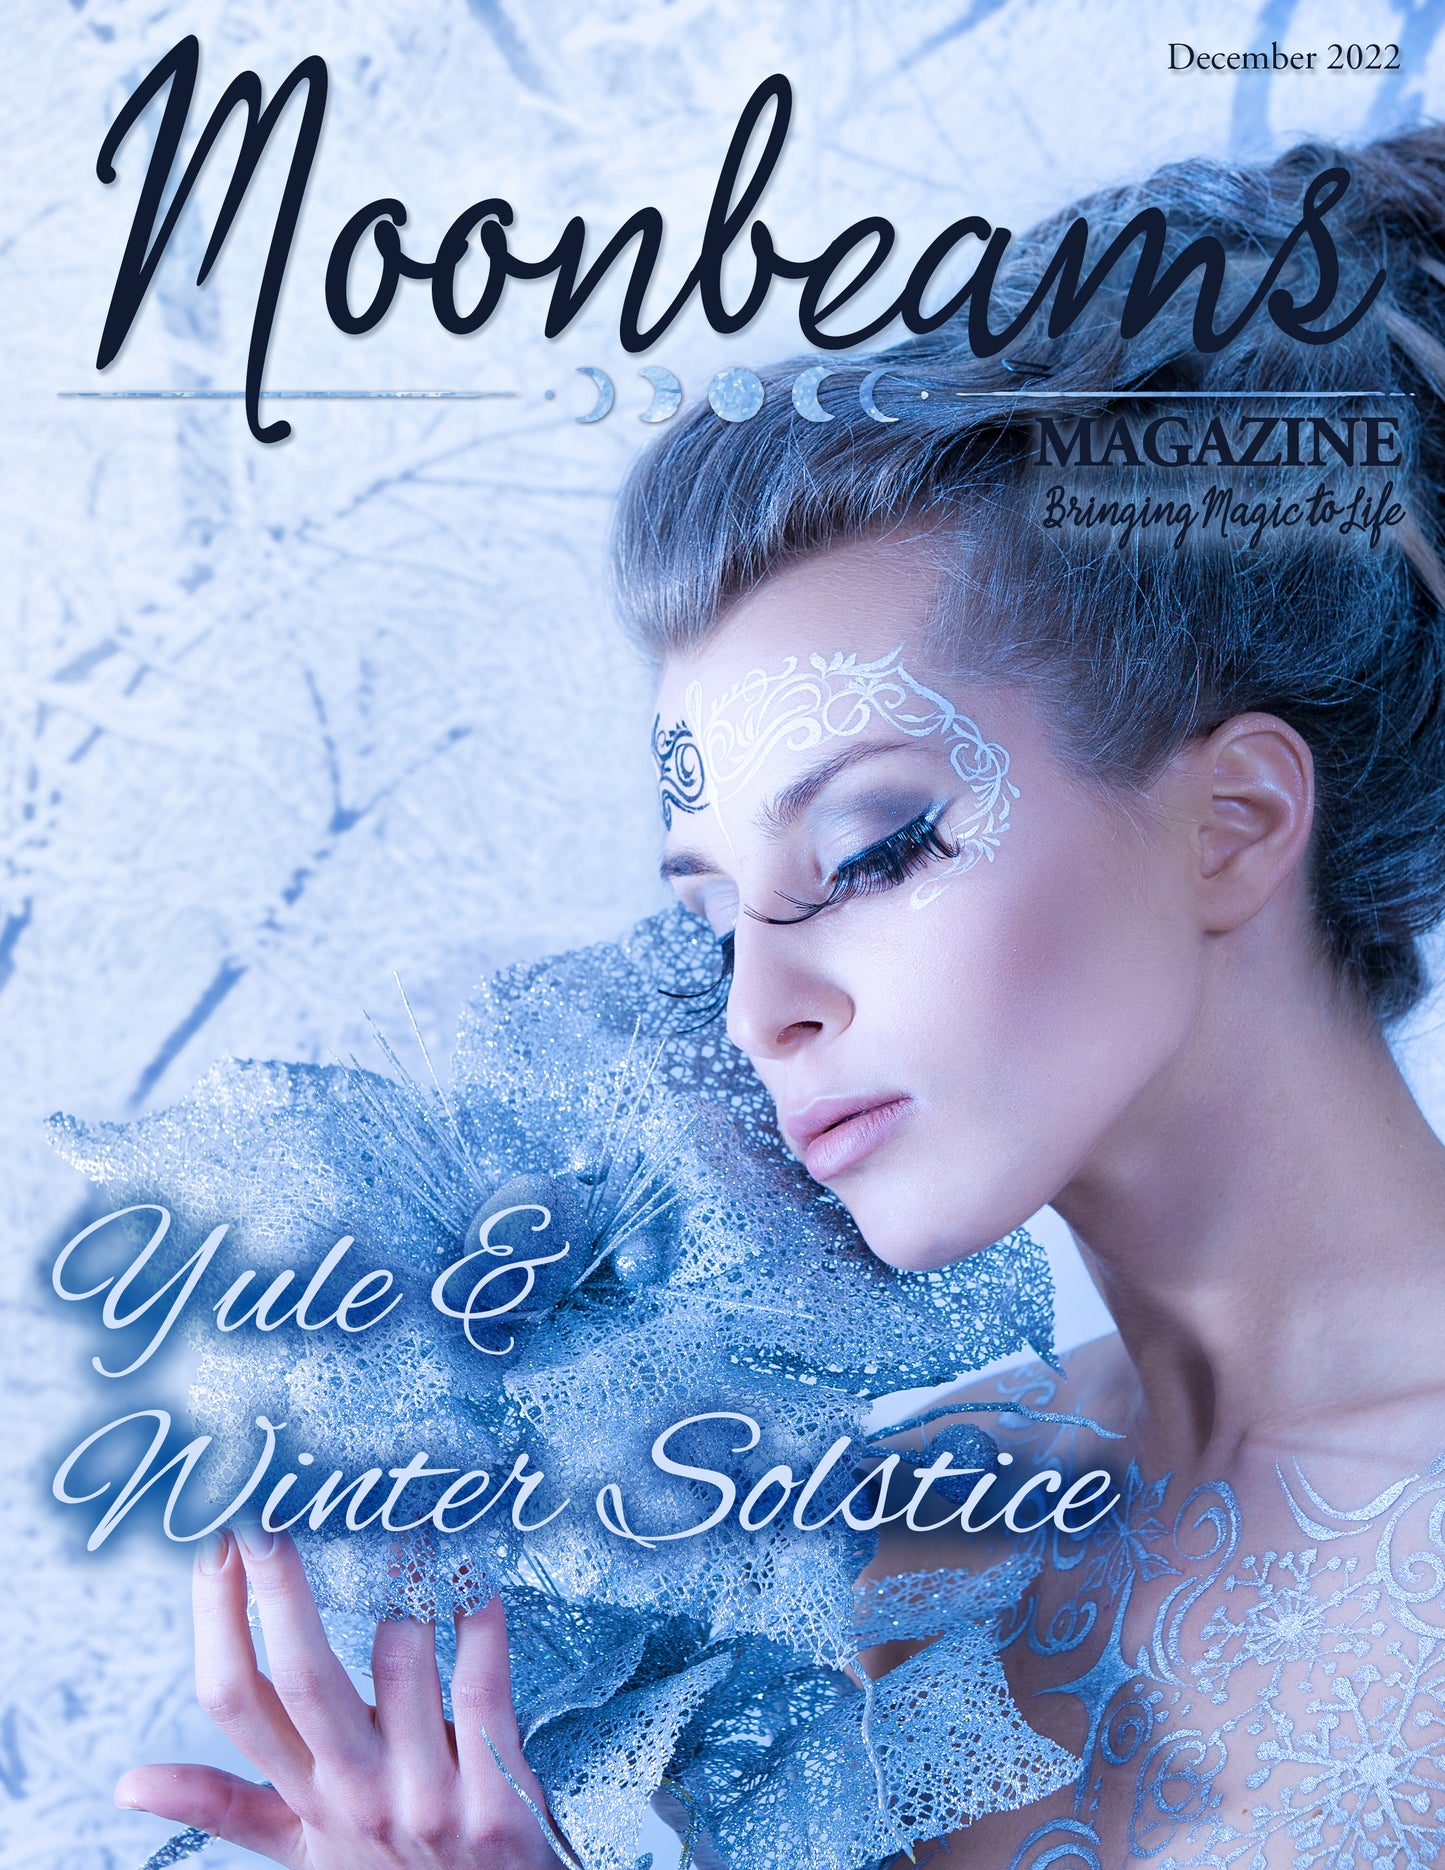 Moonbeams Magazine December 2022 - Single Mini-Issue